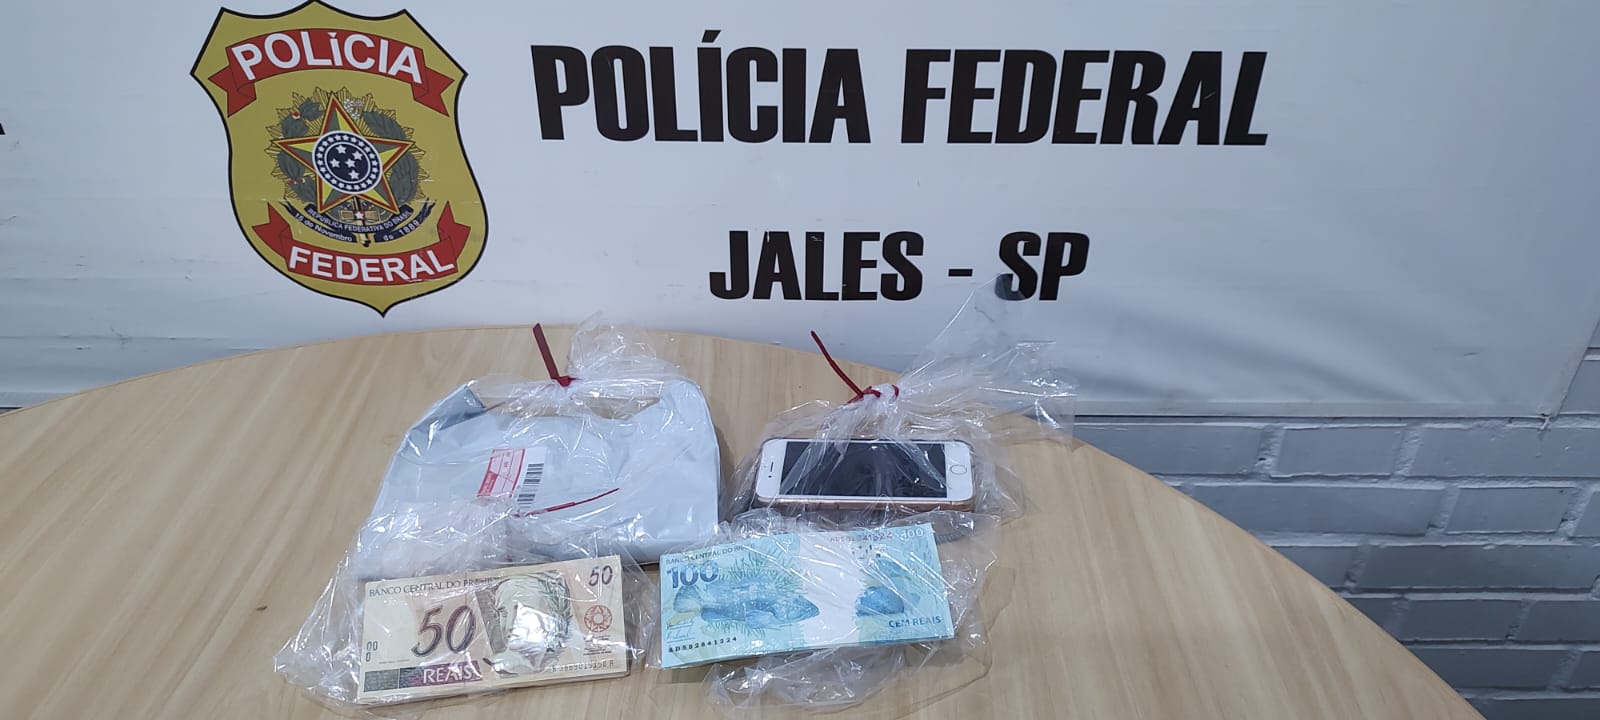 Polícia Federal prende jovem que recebeu cédulas falsas pelos Correios em Vitória Brasil